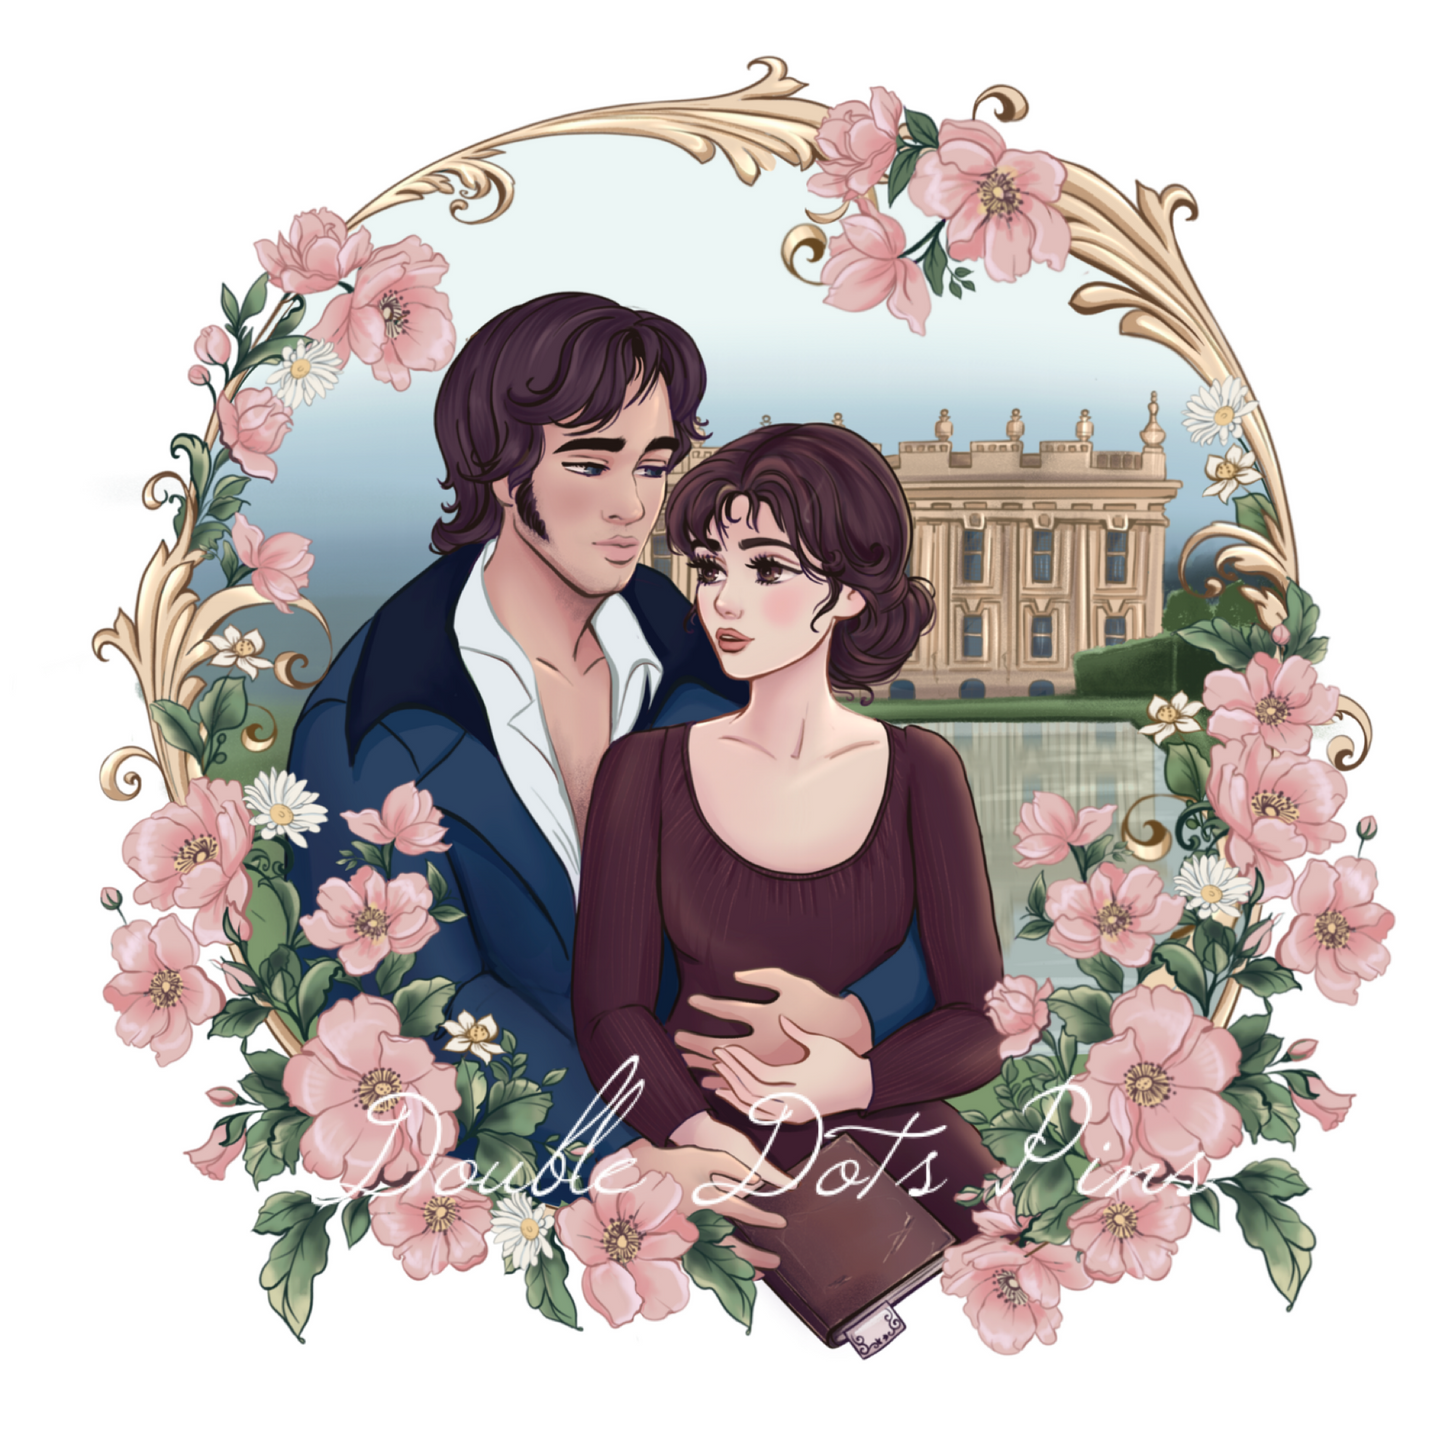 Mr. & Mrs. Darcy